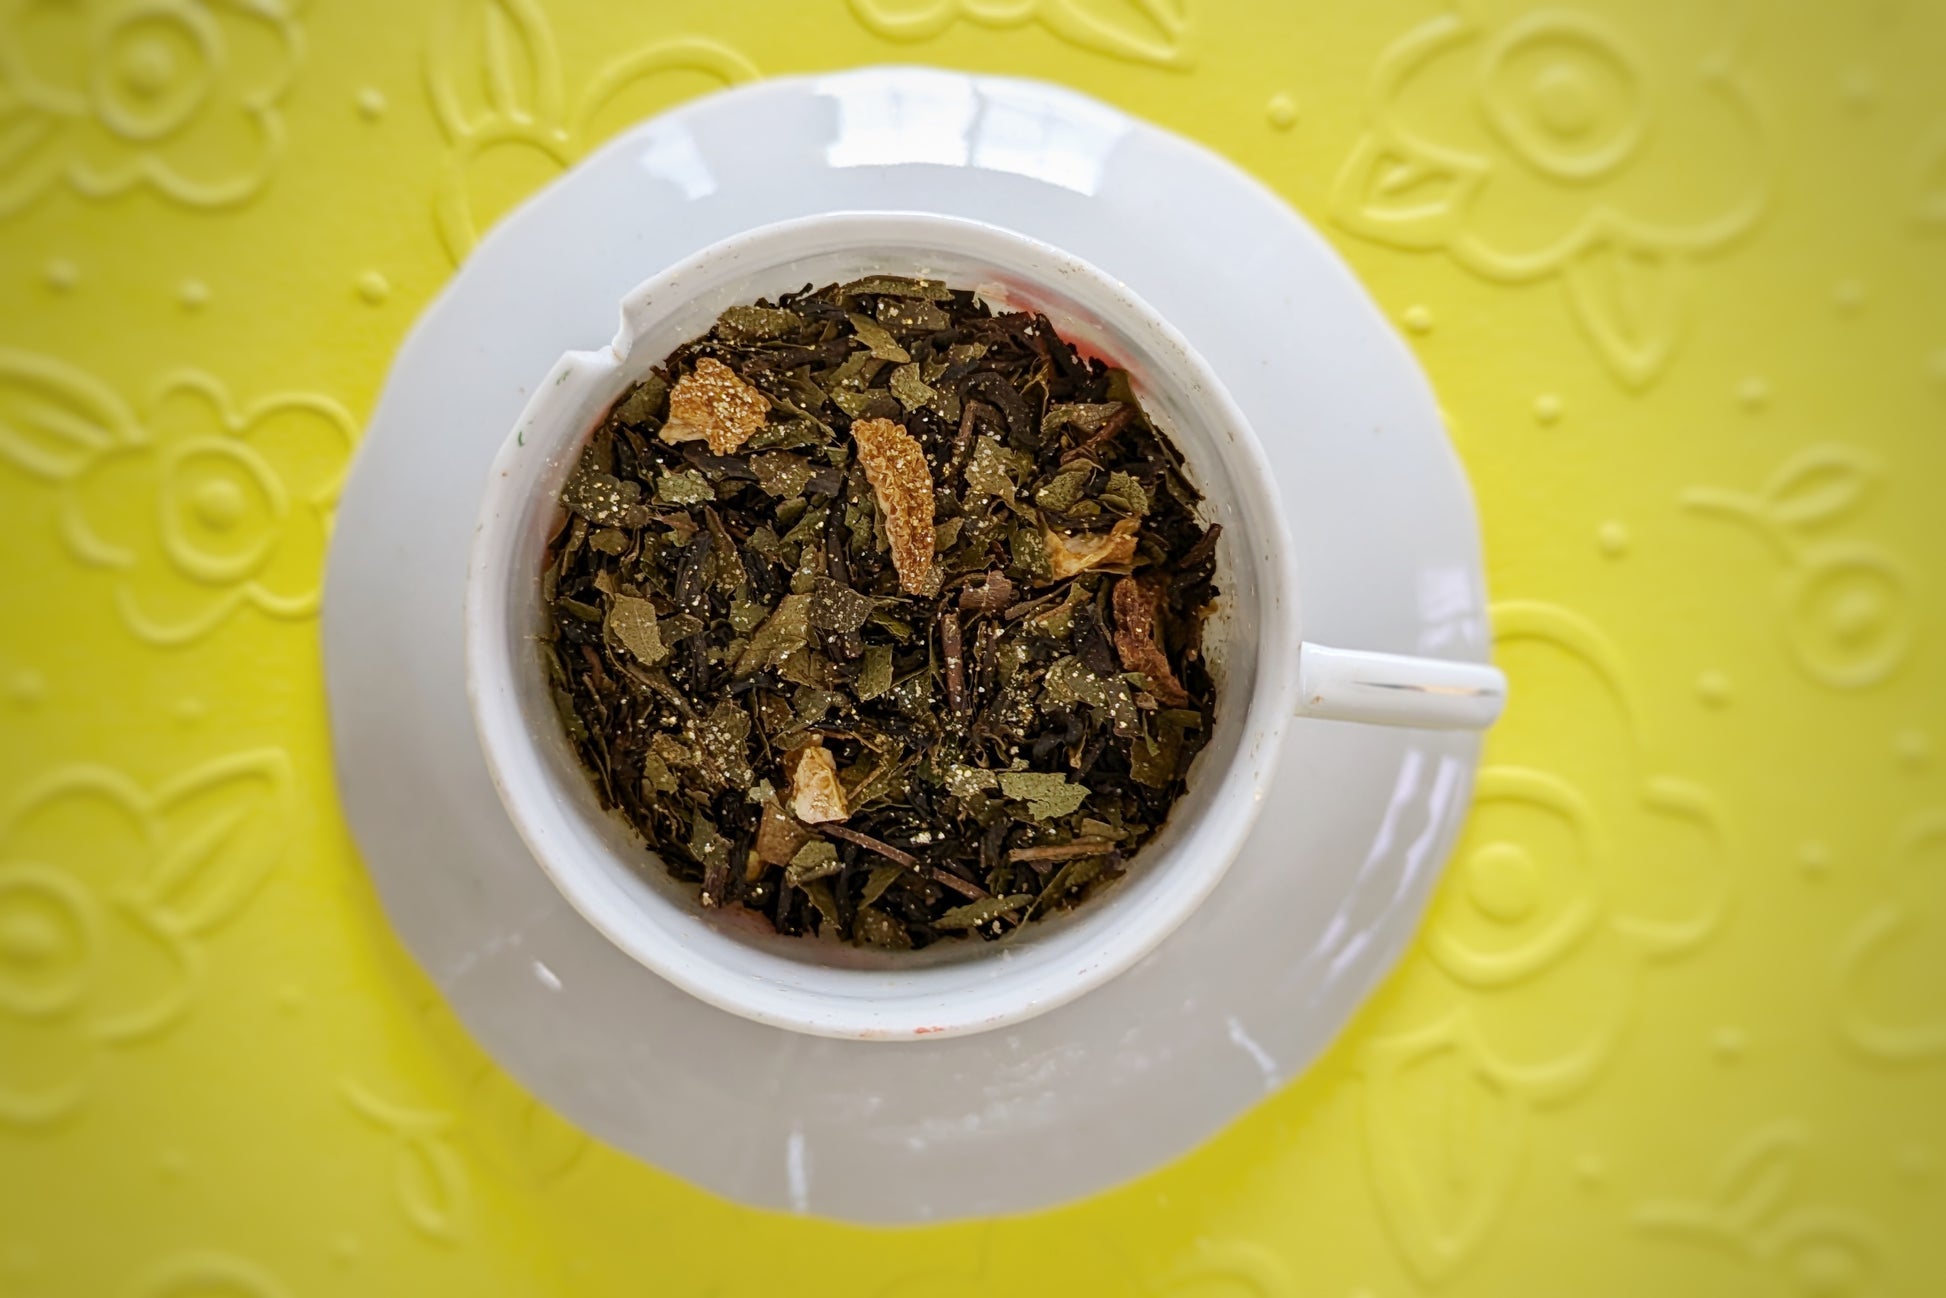 teacup with herbs, black tea, and lemon peel